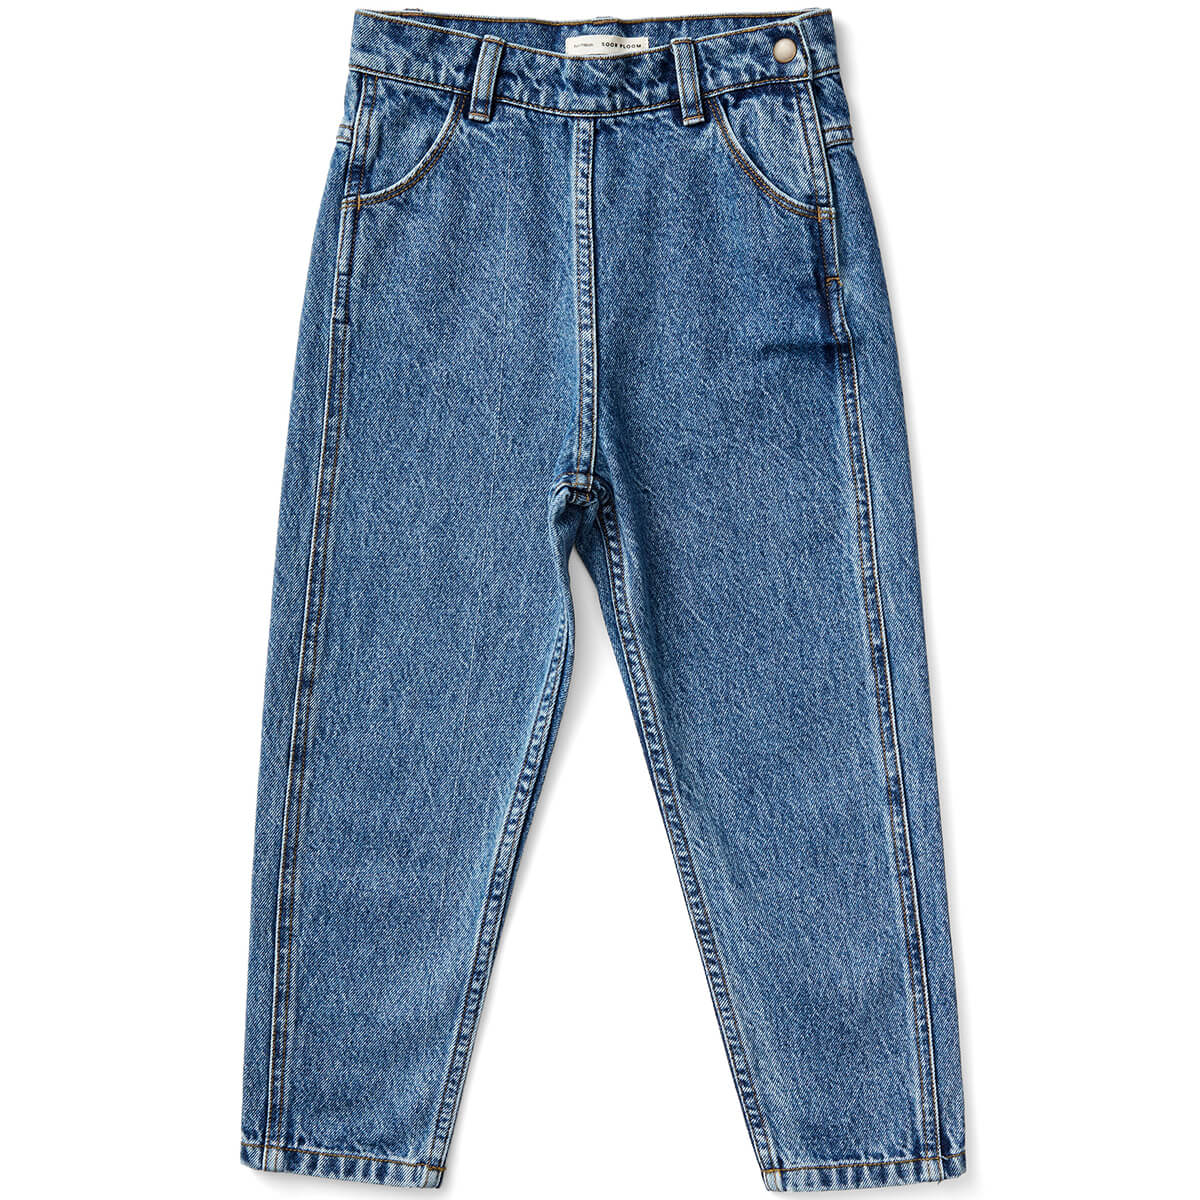 Vintage Jean in Blue Denim by Soor Ploom - Last Ones In Stock - 3 